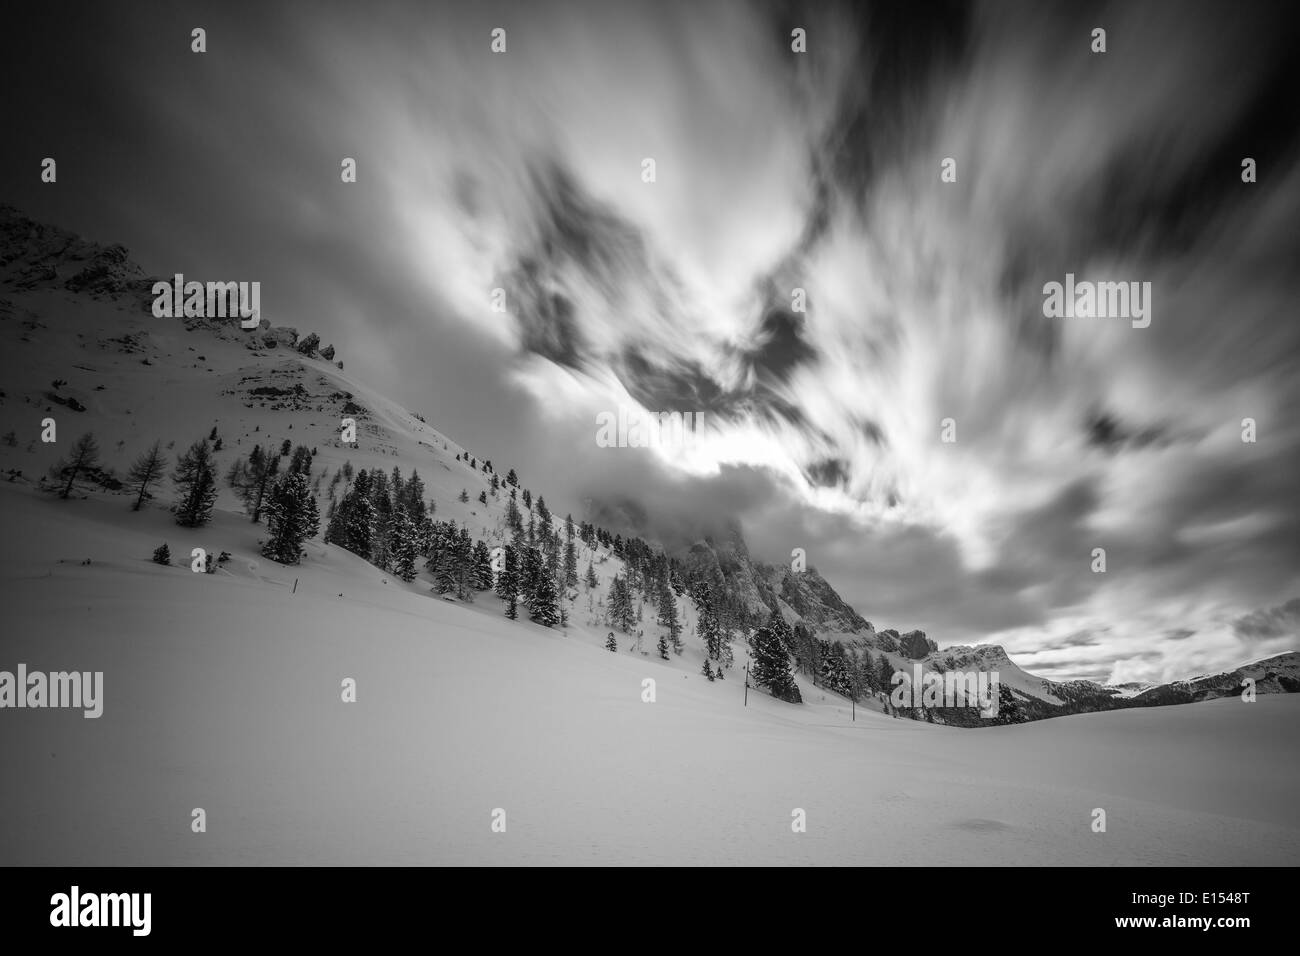 Nuvole in movimento su picchi, stagione invernale, neve. Il parco naturale Puez-Odle. Val di Funes. Le Dolomiti. Alpi Italiane. Europa. Foto Stock